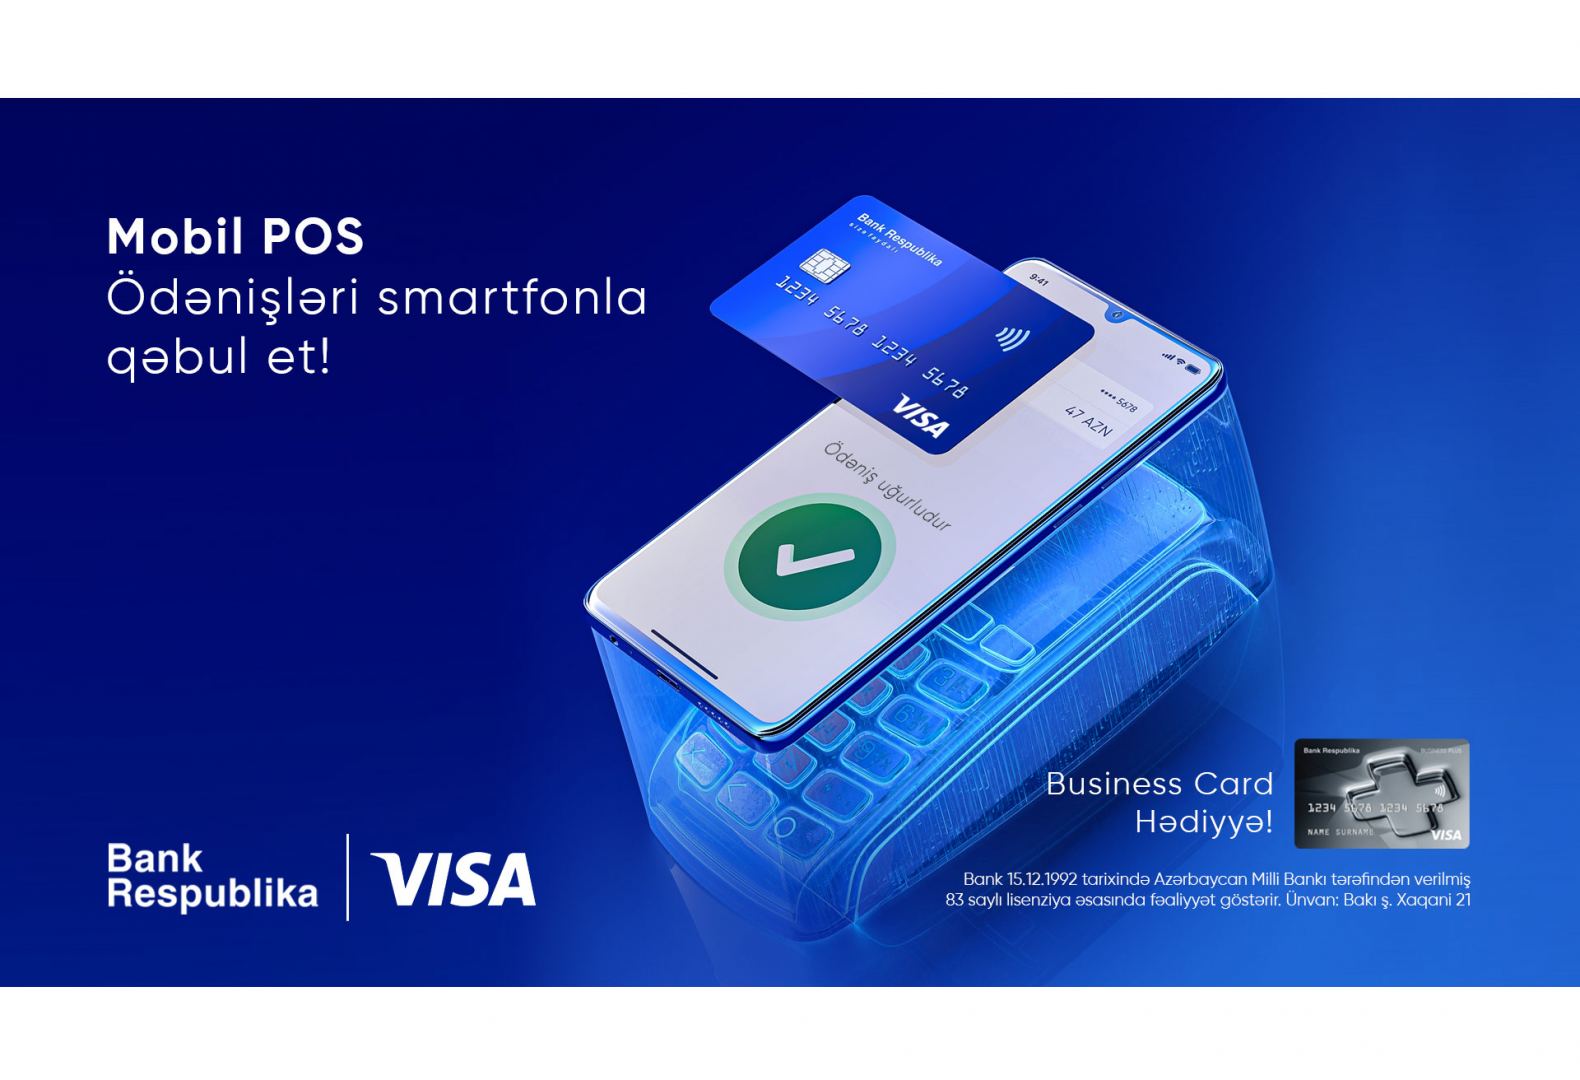 Bank Respublika Visa ilə birgə yeni “Mobil POS” xidmətini təqdim etdi!